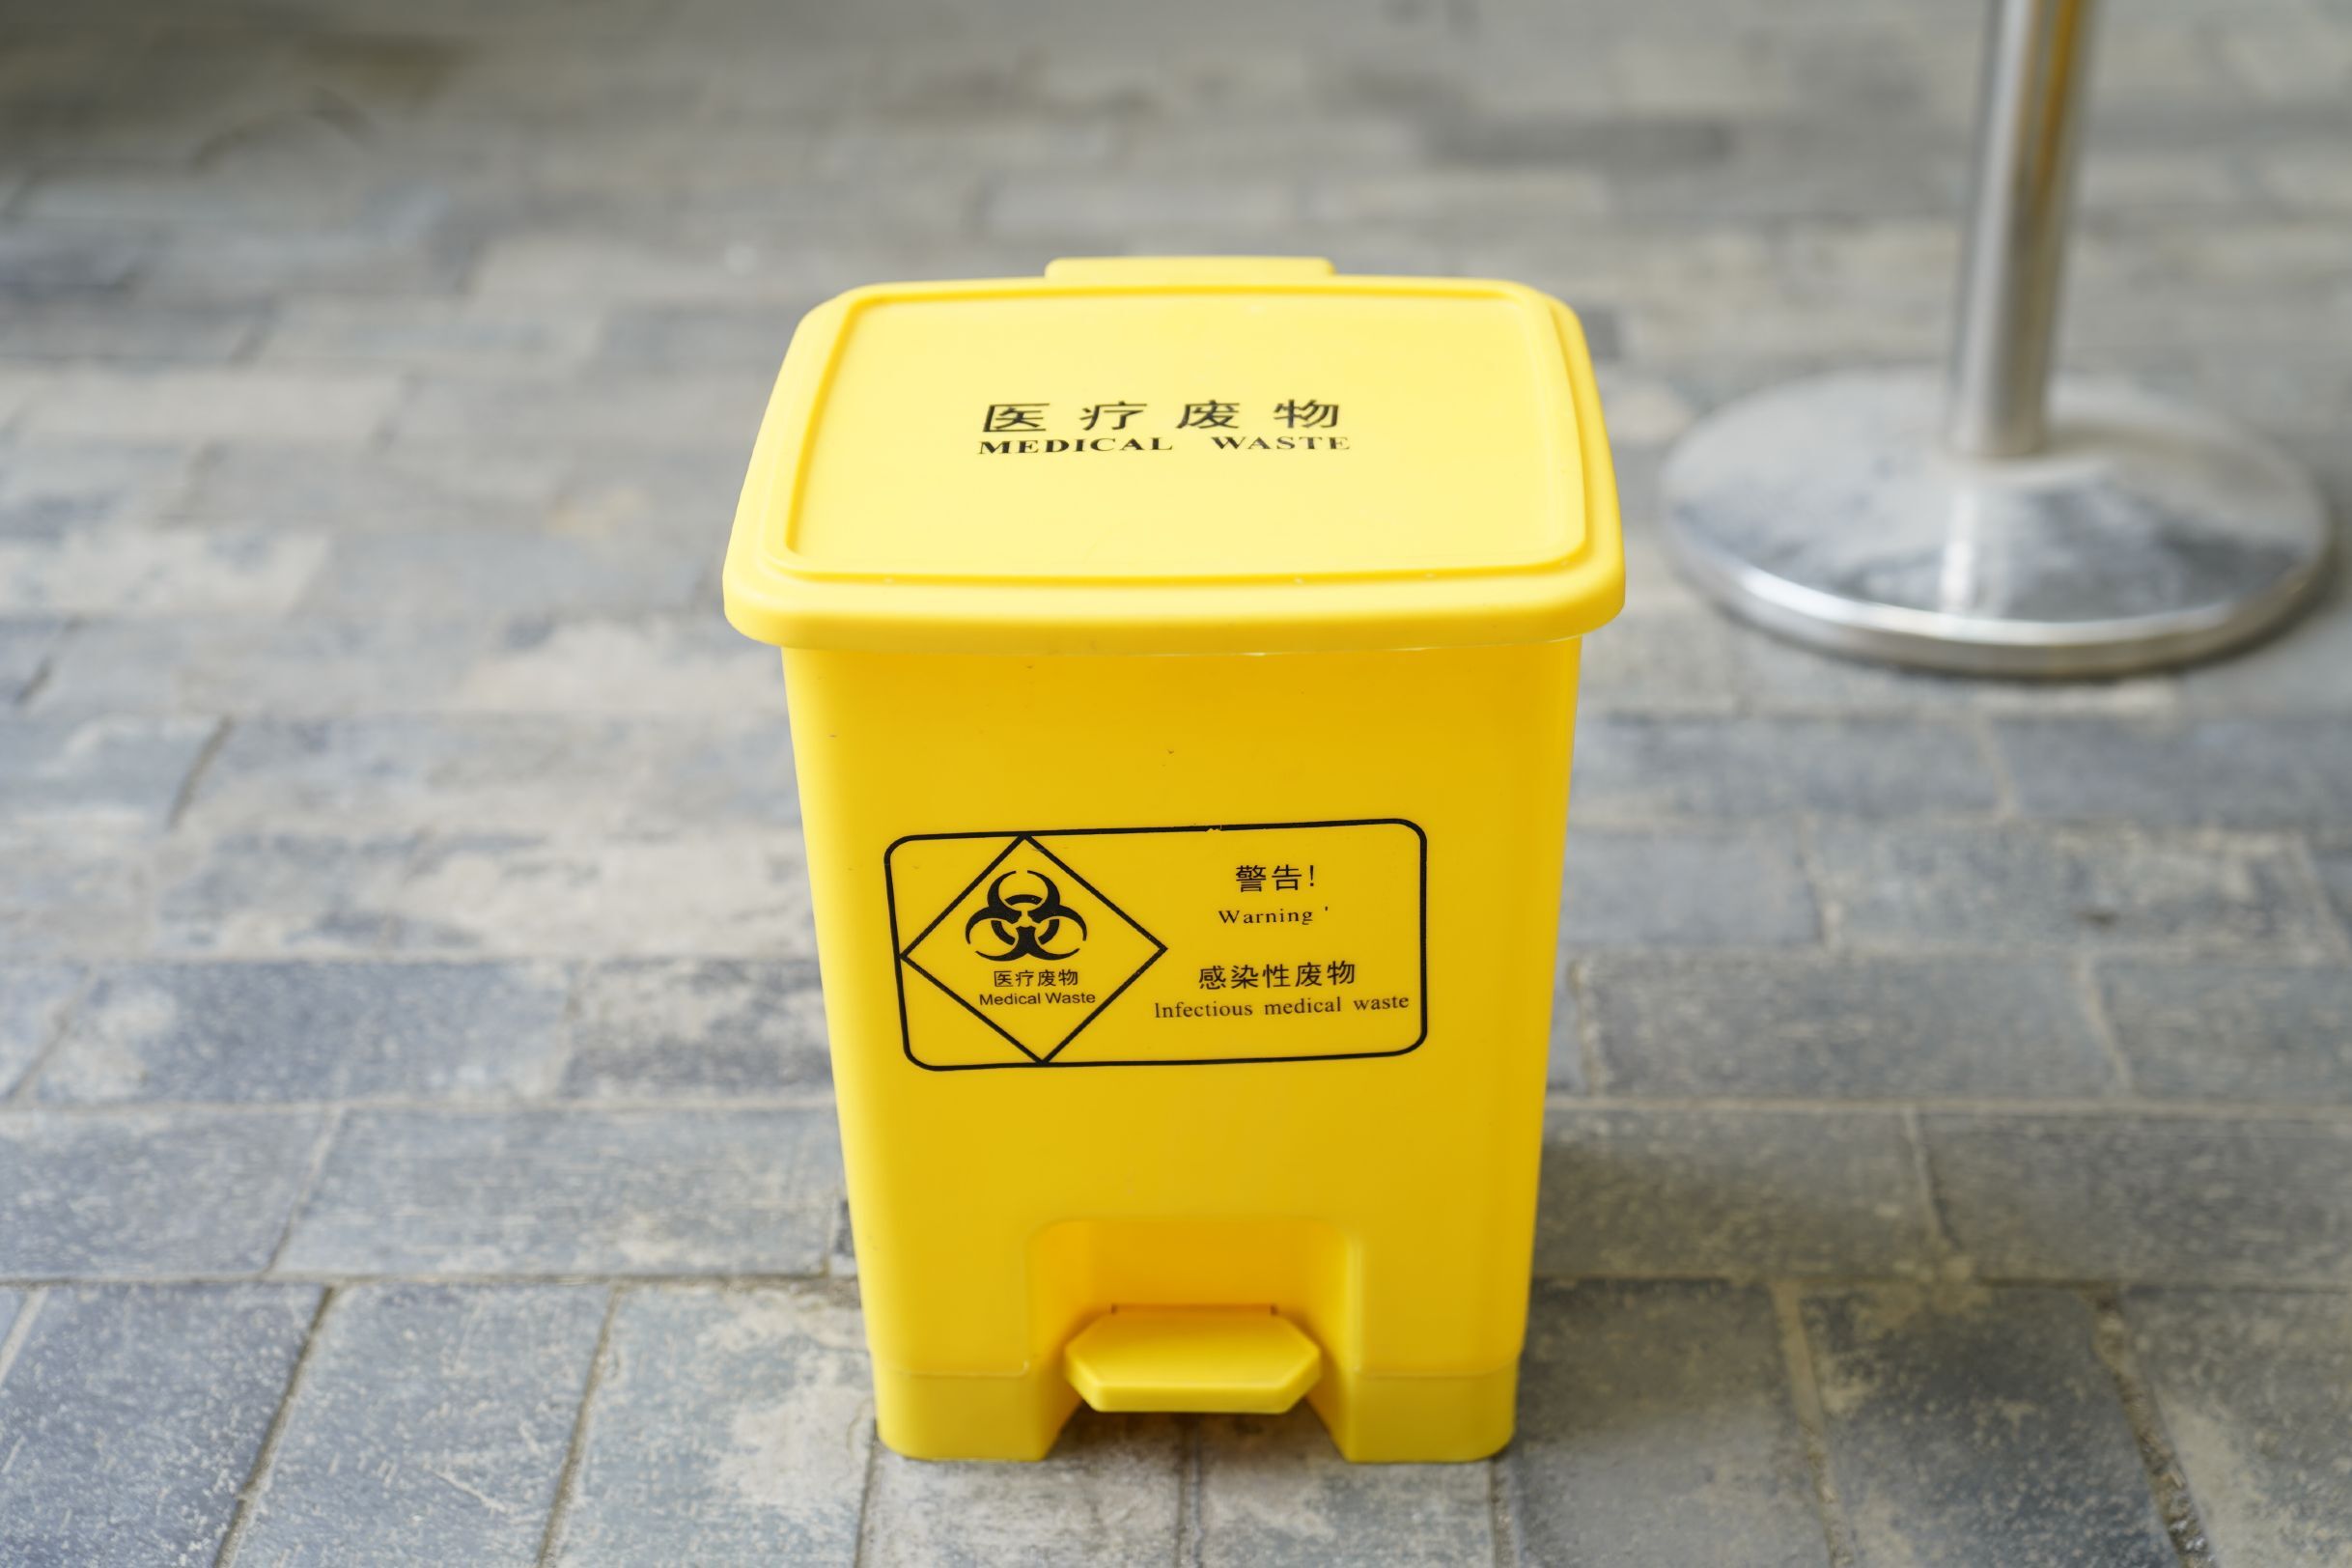 垃圾筒 福州医疗垃圾桶公司 欢迎来电咨询